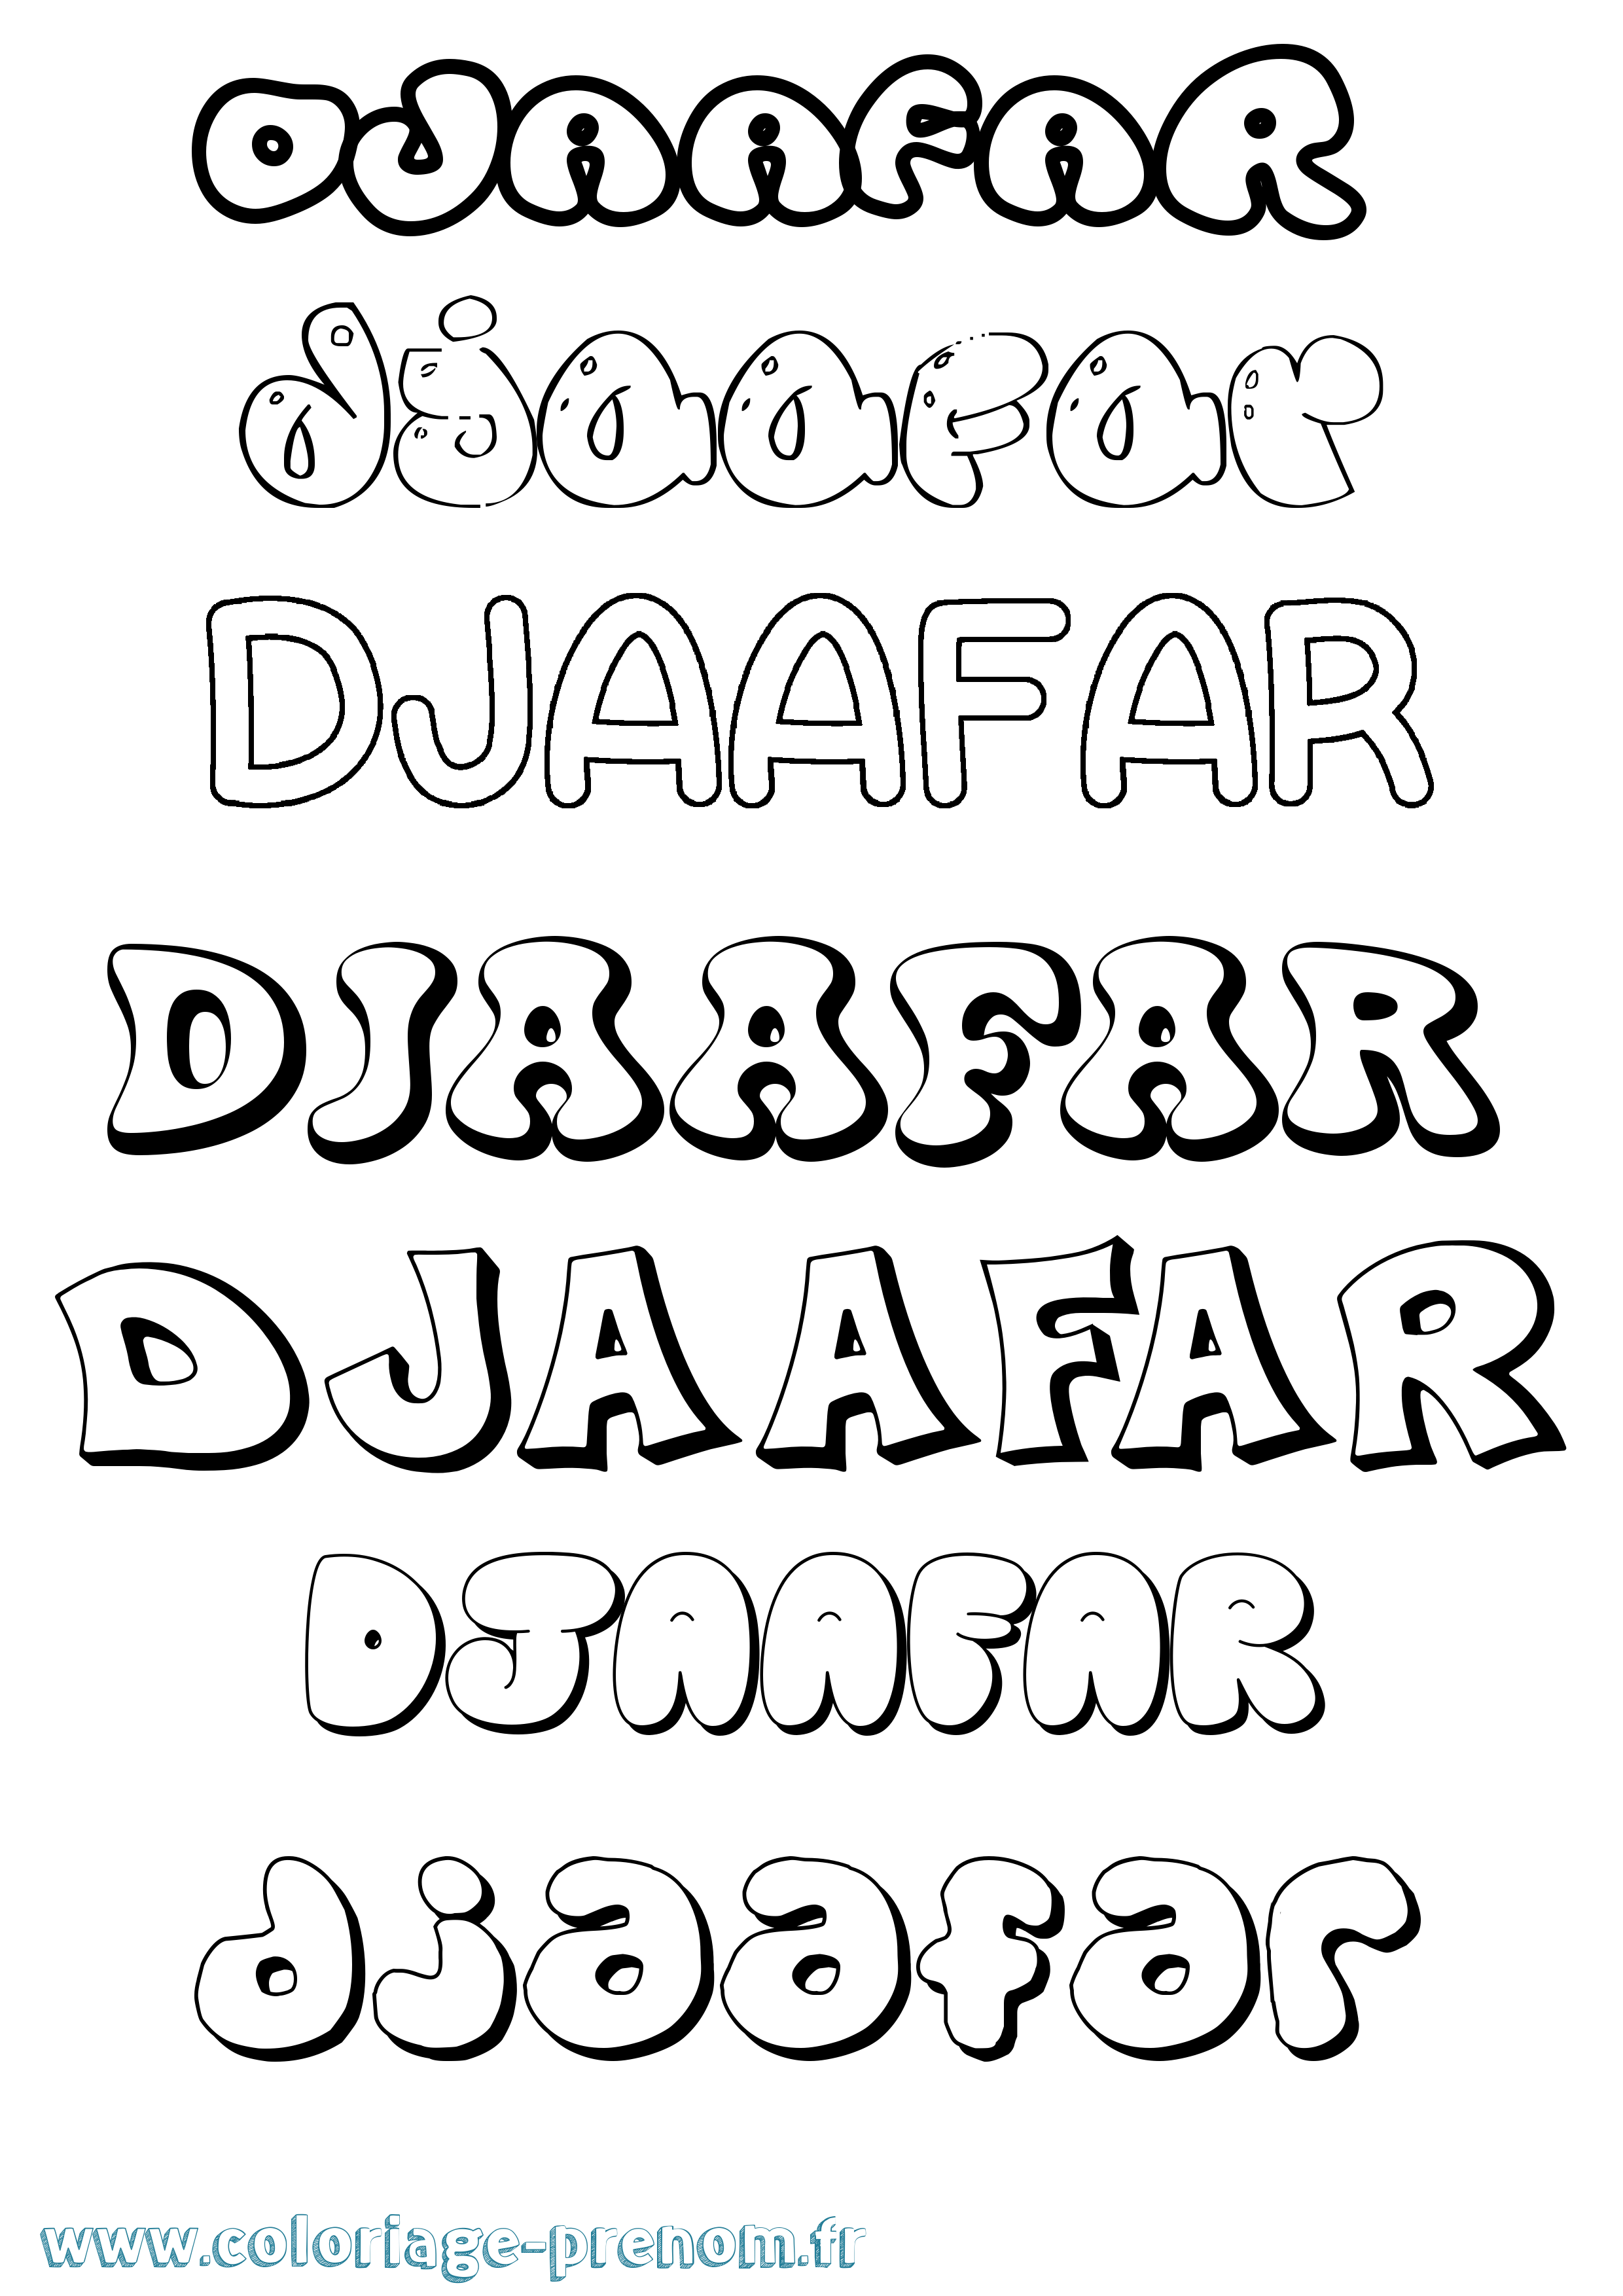 Coloriage prénom Djaafar Bubble